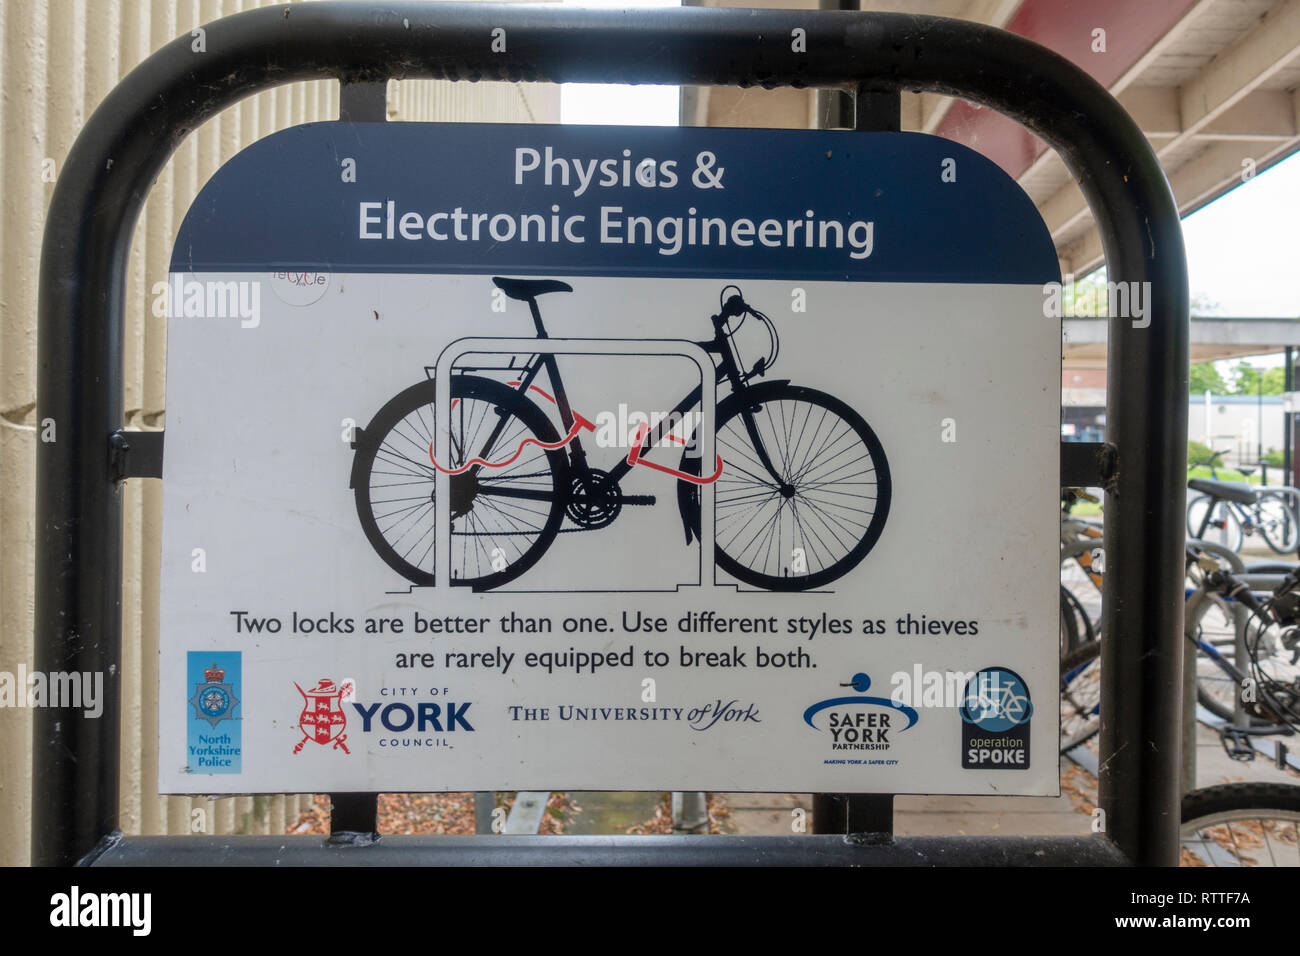 Cycle locking advice sign, University of York campus, Heslington, York, Yorkshire, UK. Stock Photo